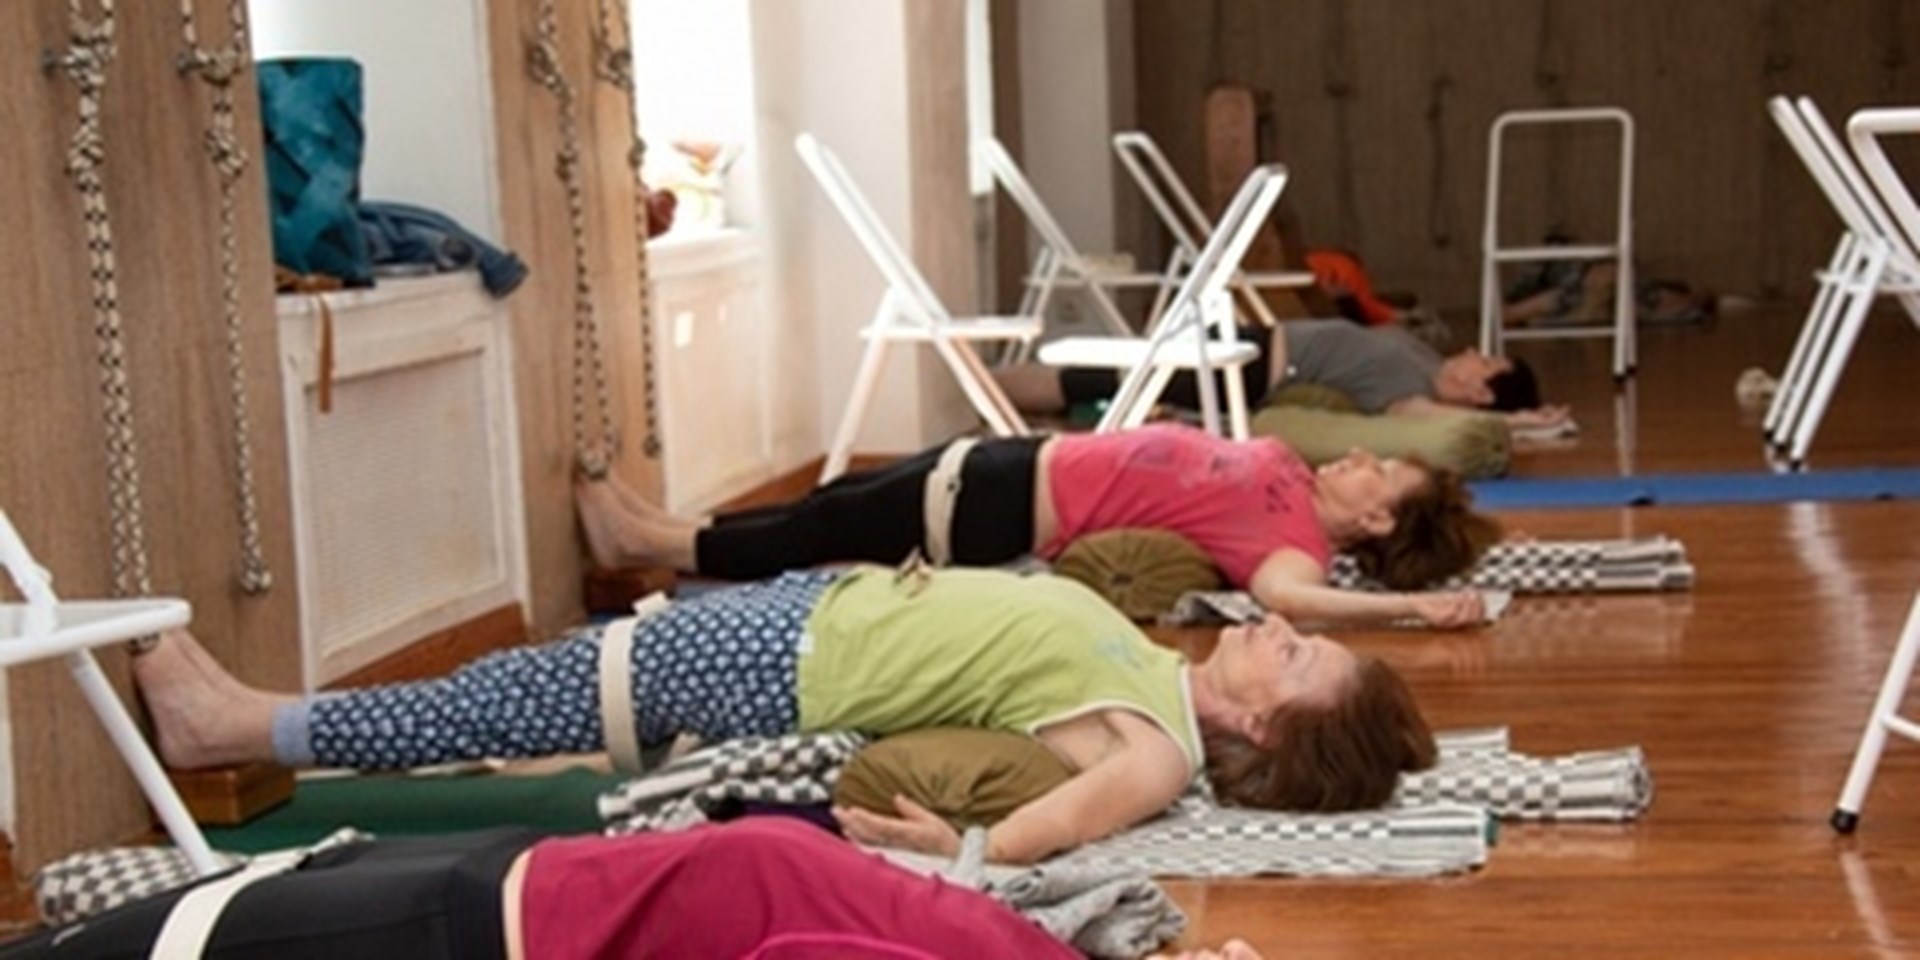 21.04.2020 Объявление. Шестой открытый урок йоги по РС онлайн